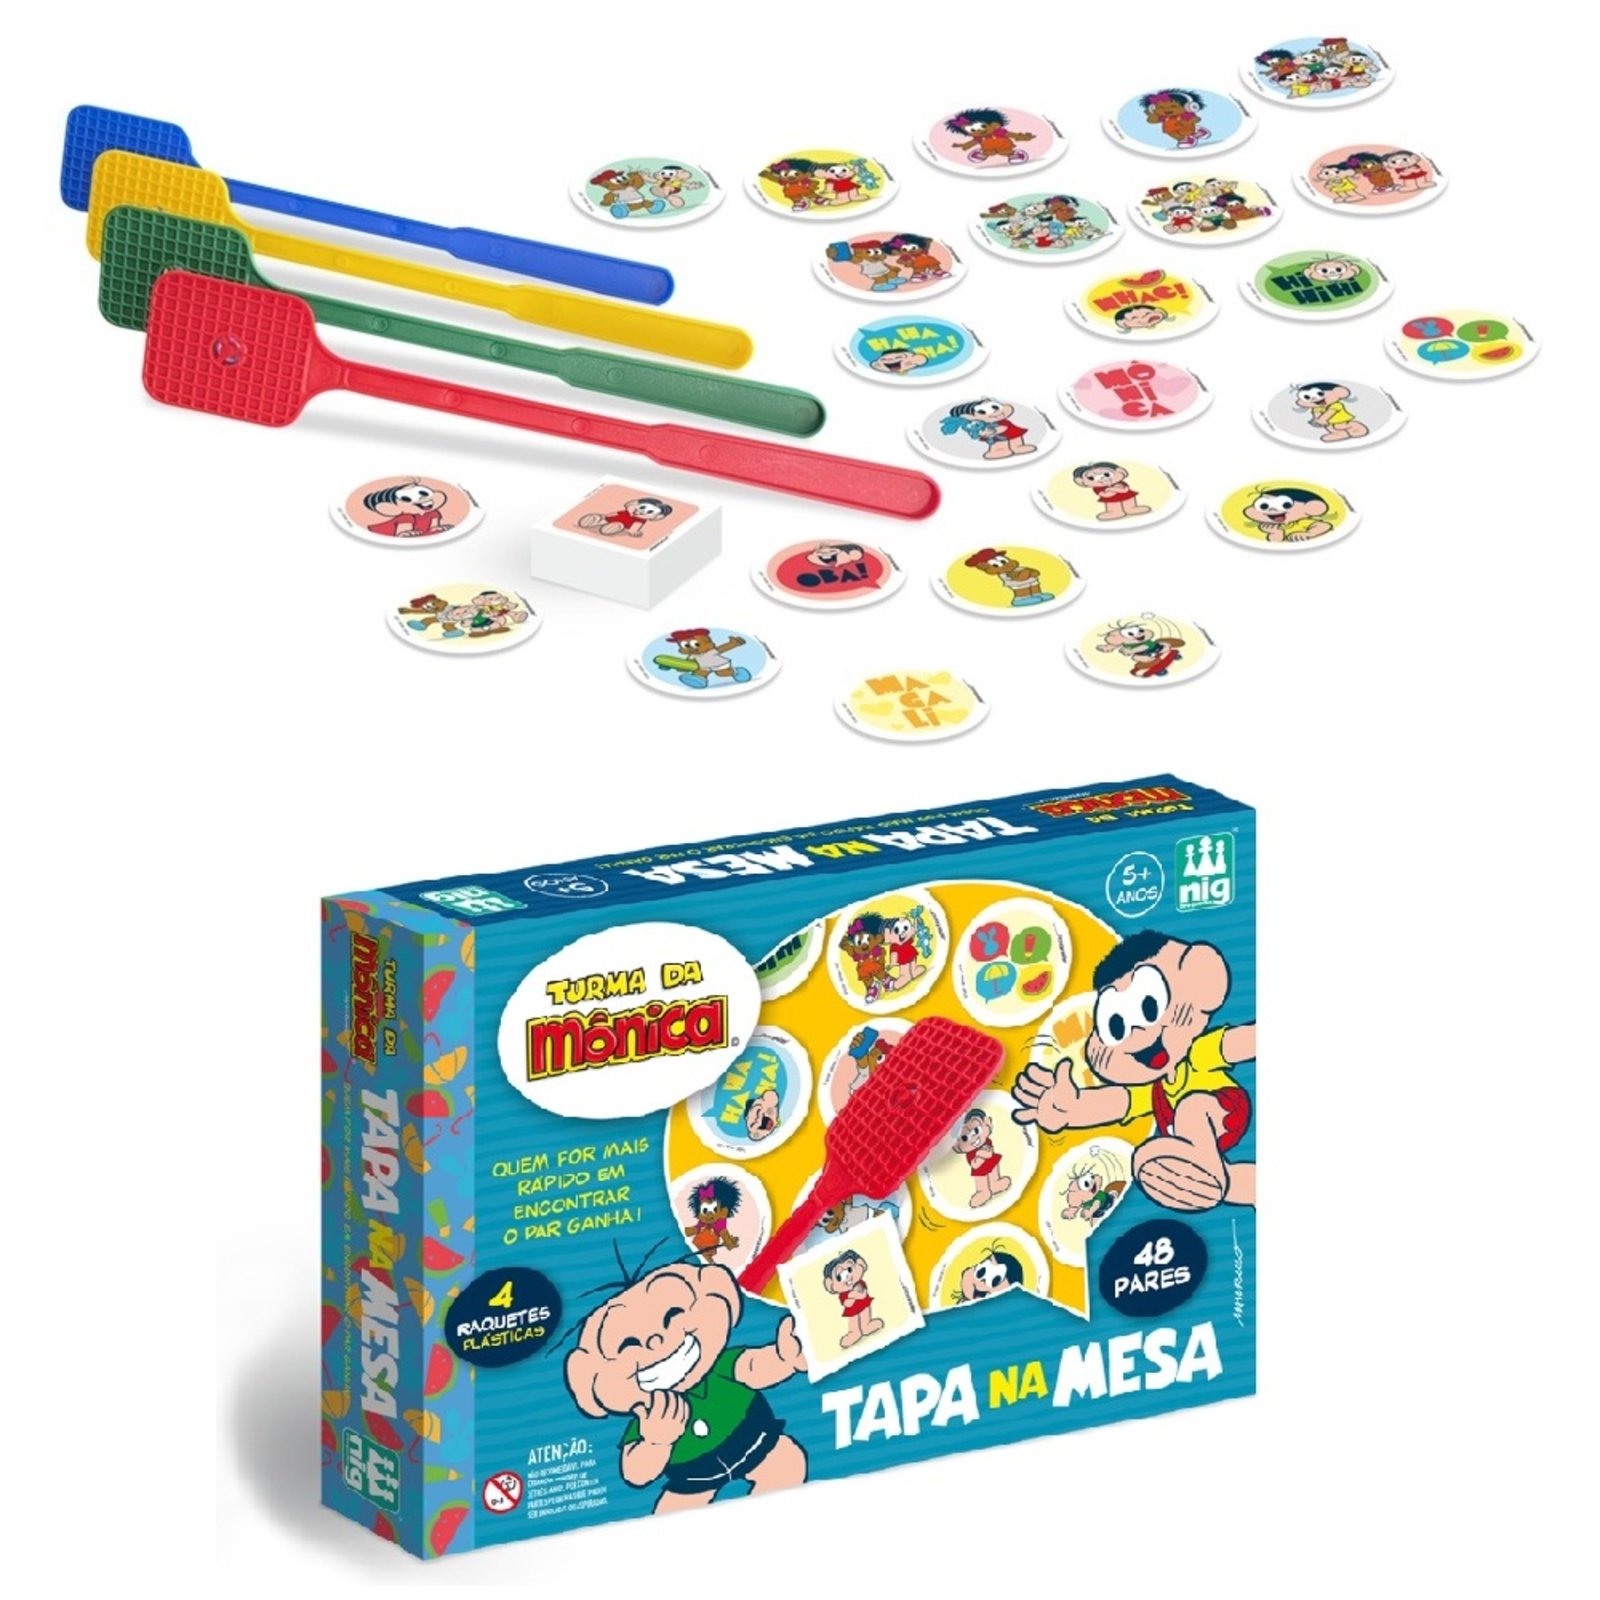 Jogo Tapa Na Mesa Turma Da Mônica Jogo De Memória Nig Brinquedos Compre Agora Tricae Brasil 4055